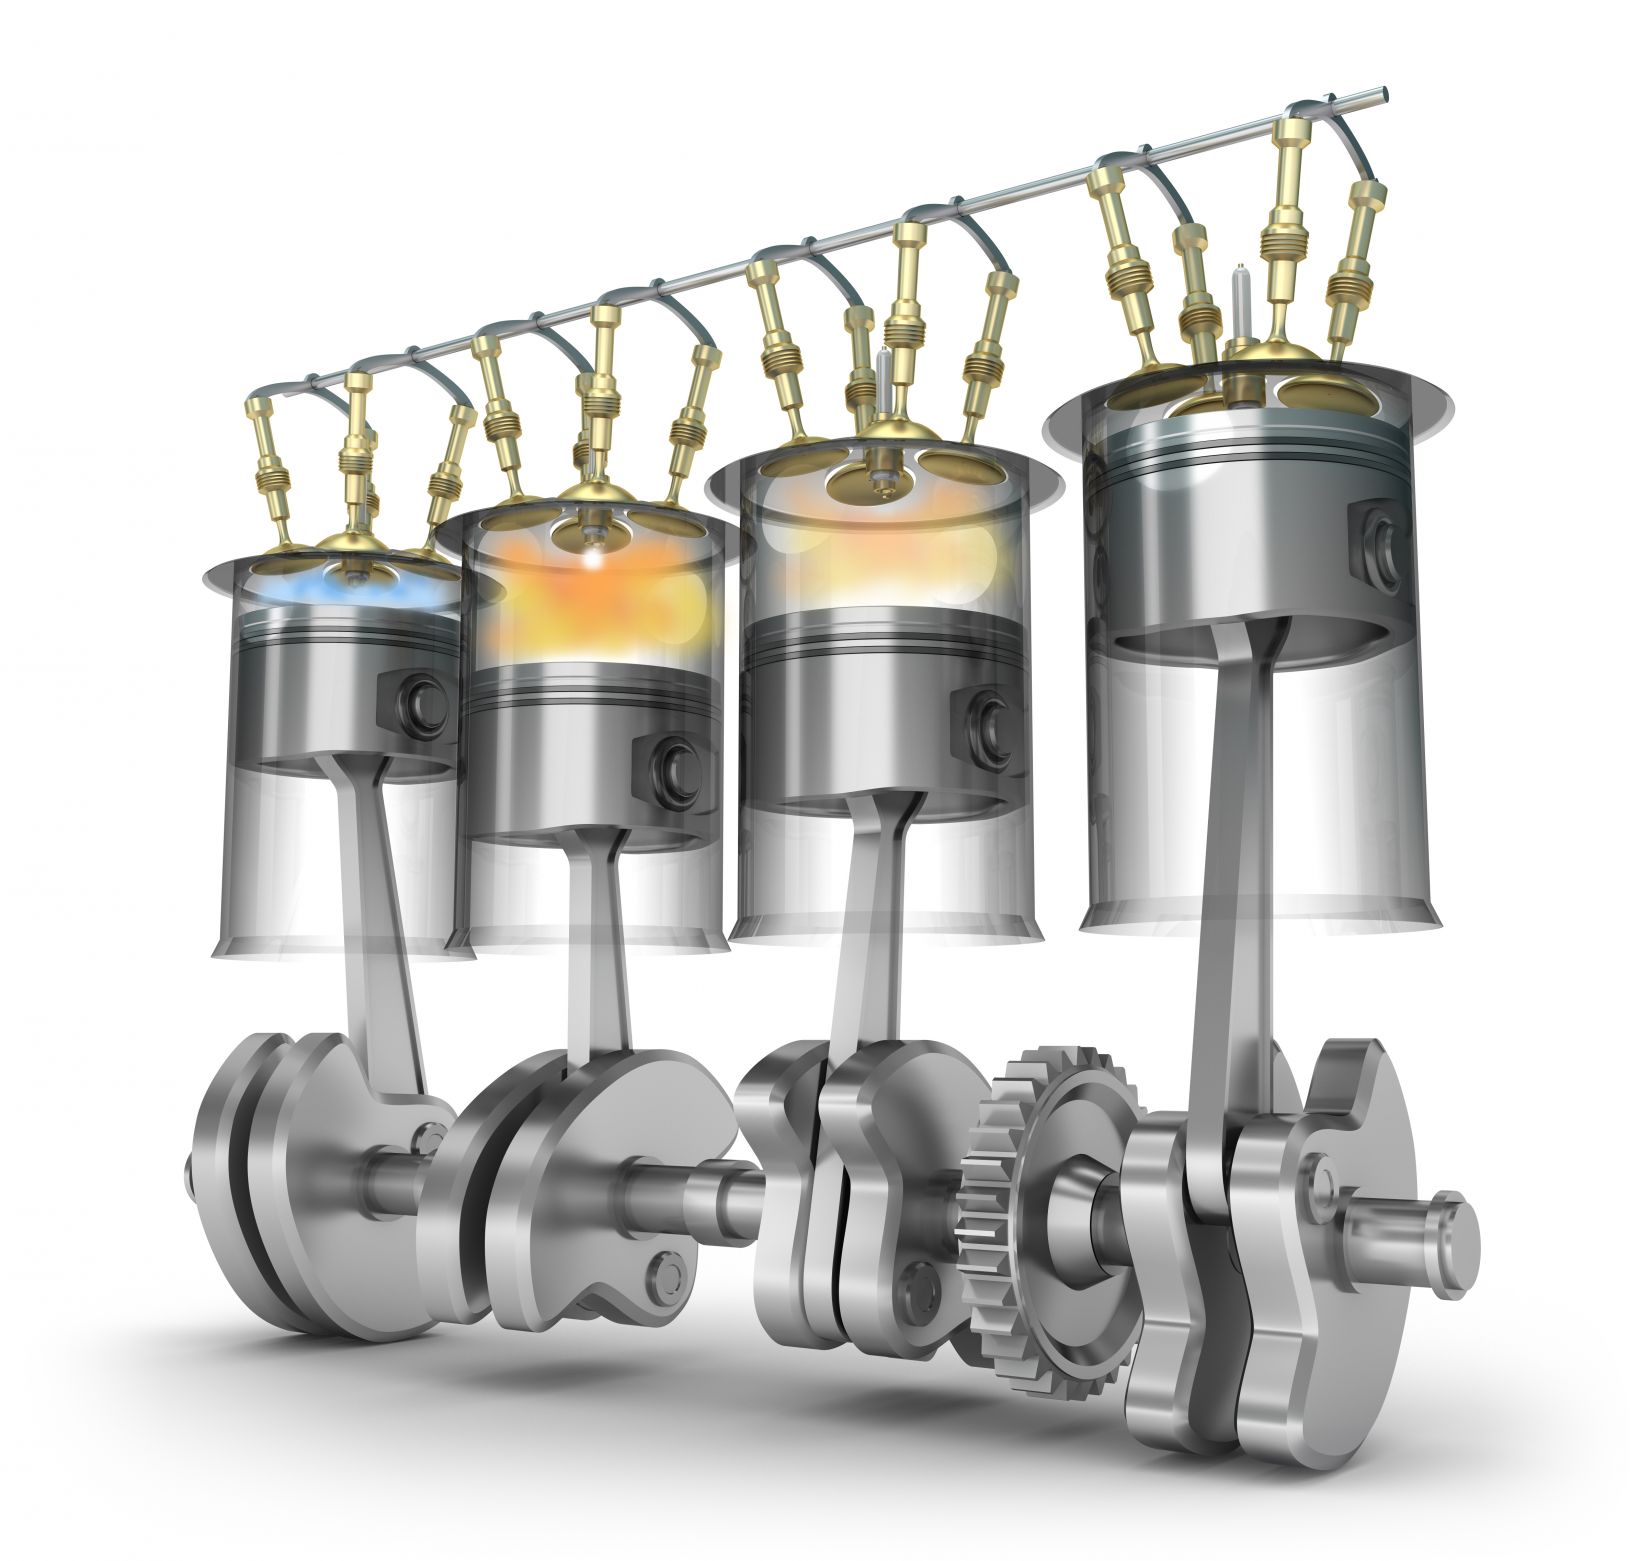 Cilindros da câmara de combustão como os de um motor alternativo de combustão interna grande (RICE)